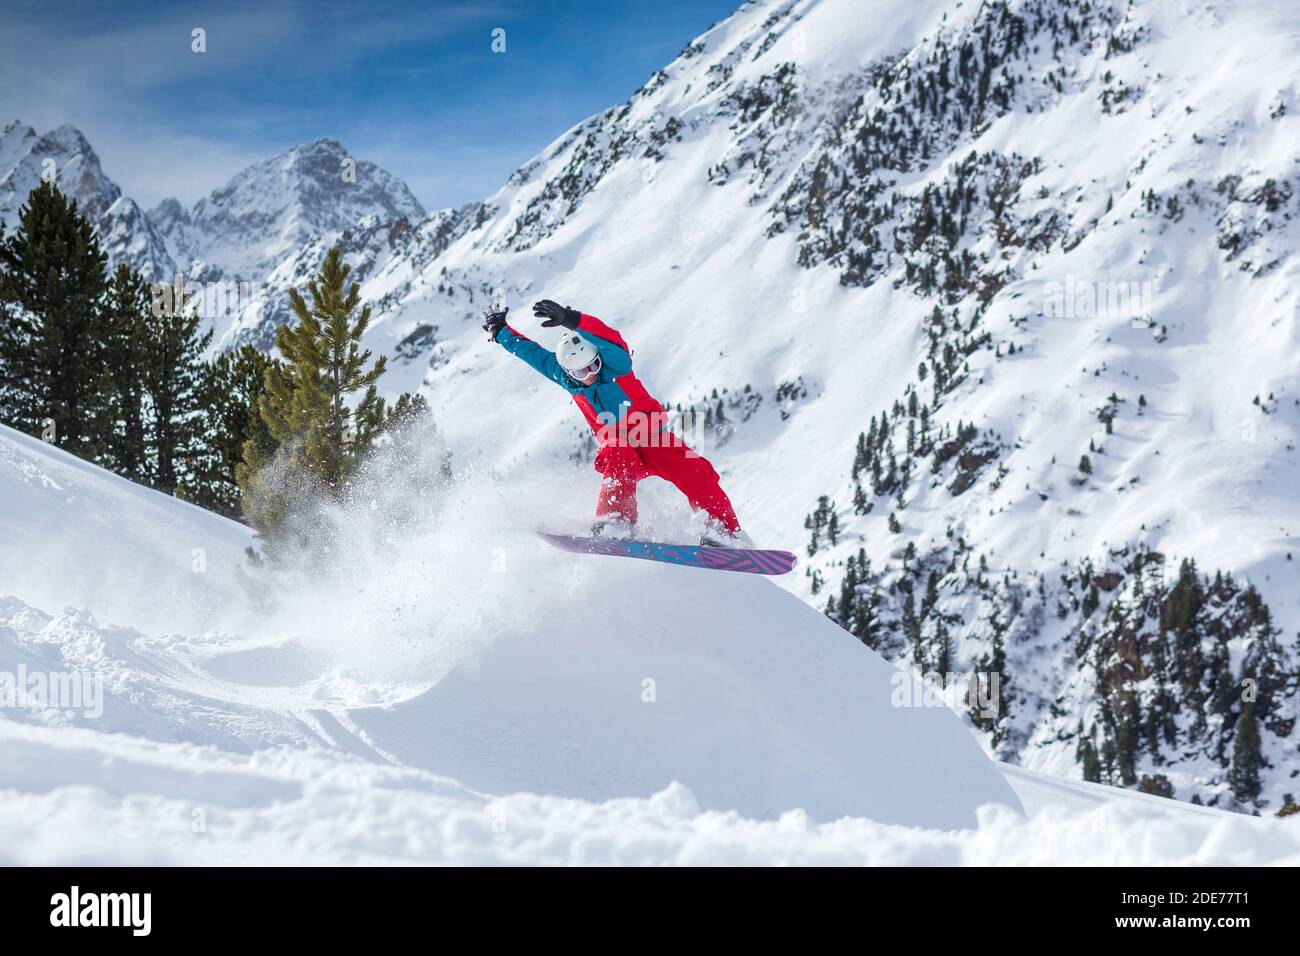 Österreich, Stubaier Alpen, Sellrain, Kühtai, Snowboarder beim Sprung abseits der Piste Stock Photo